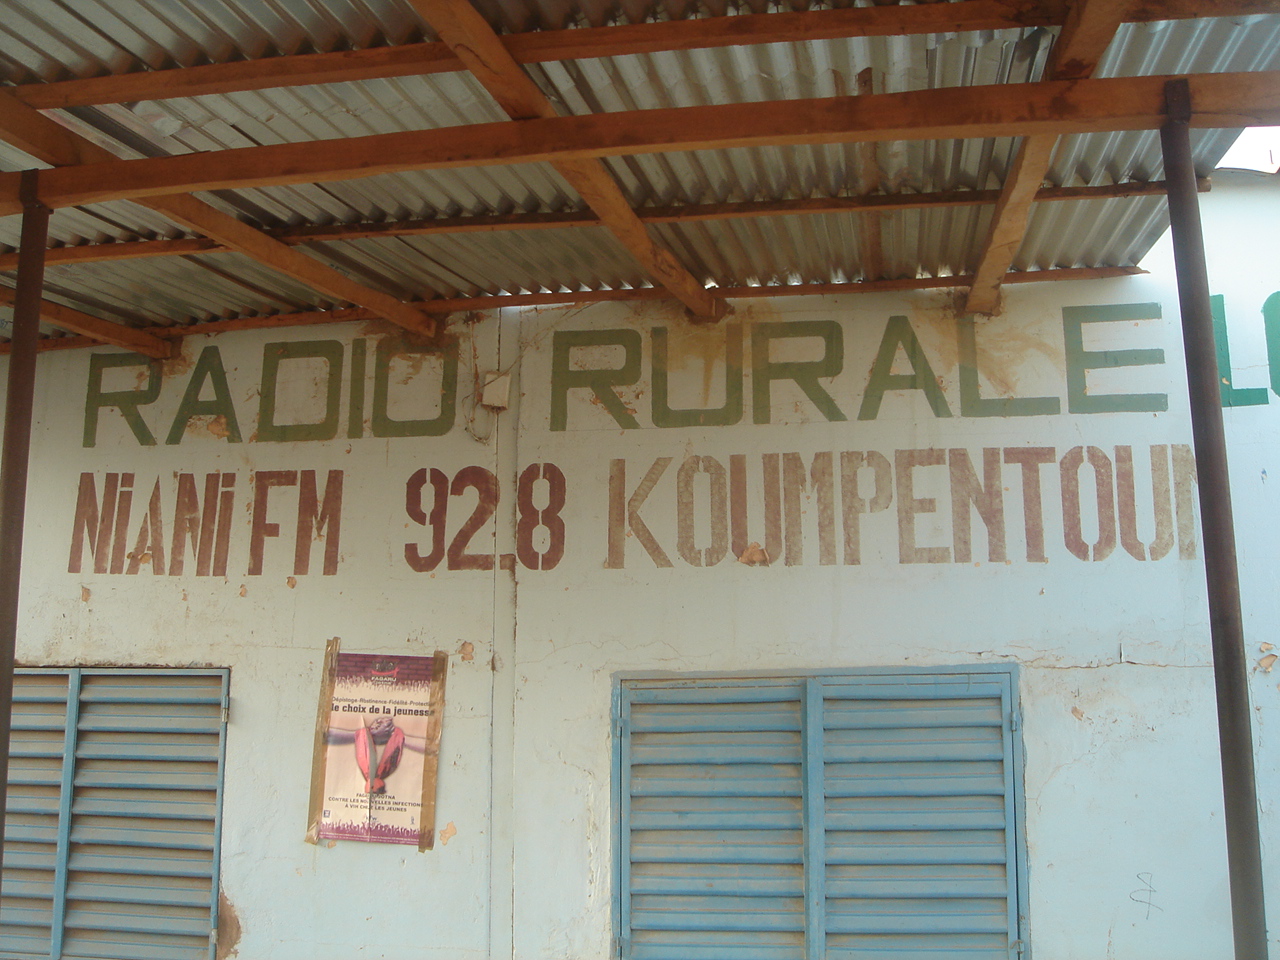 NIANI FM AVRIL 2010.JPG (588 KB)